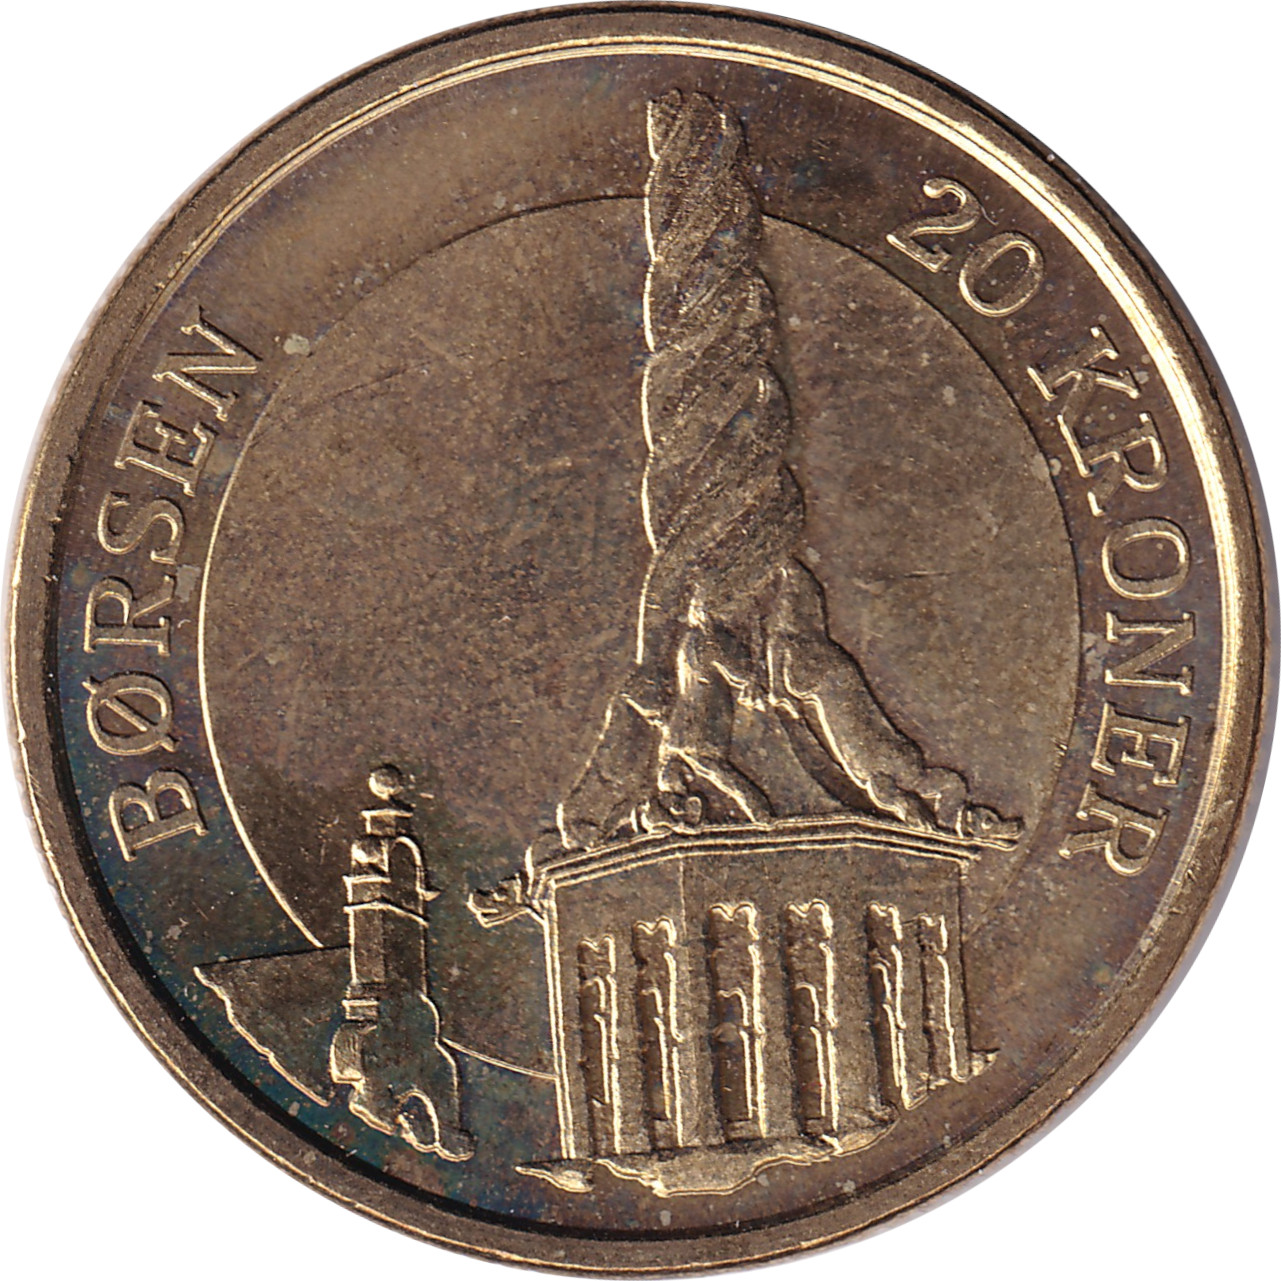 20 kroner - Ancienne bourse